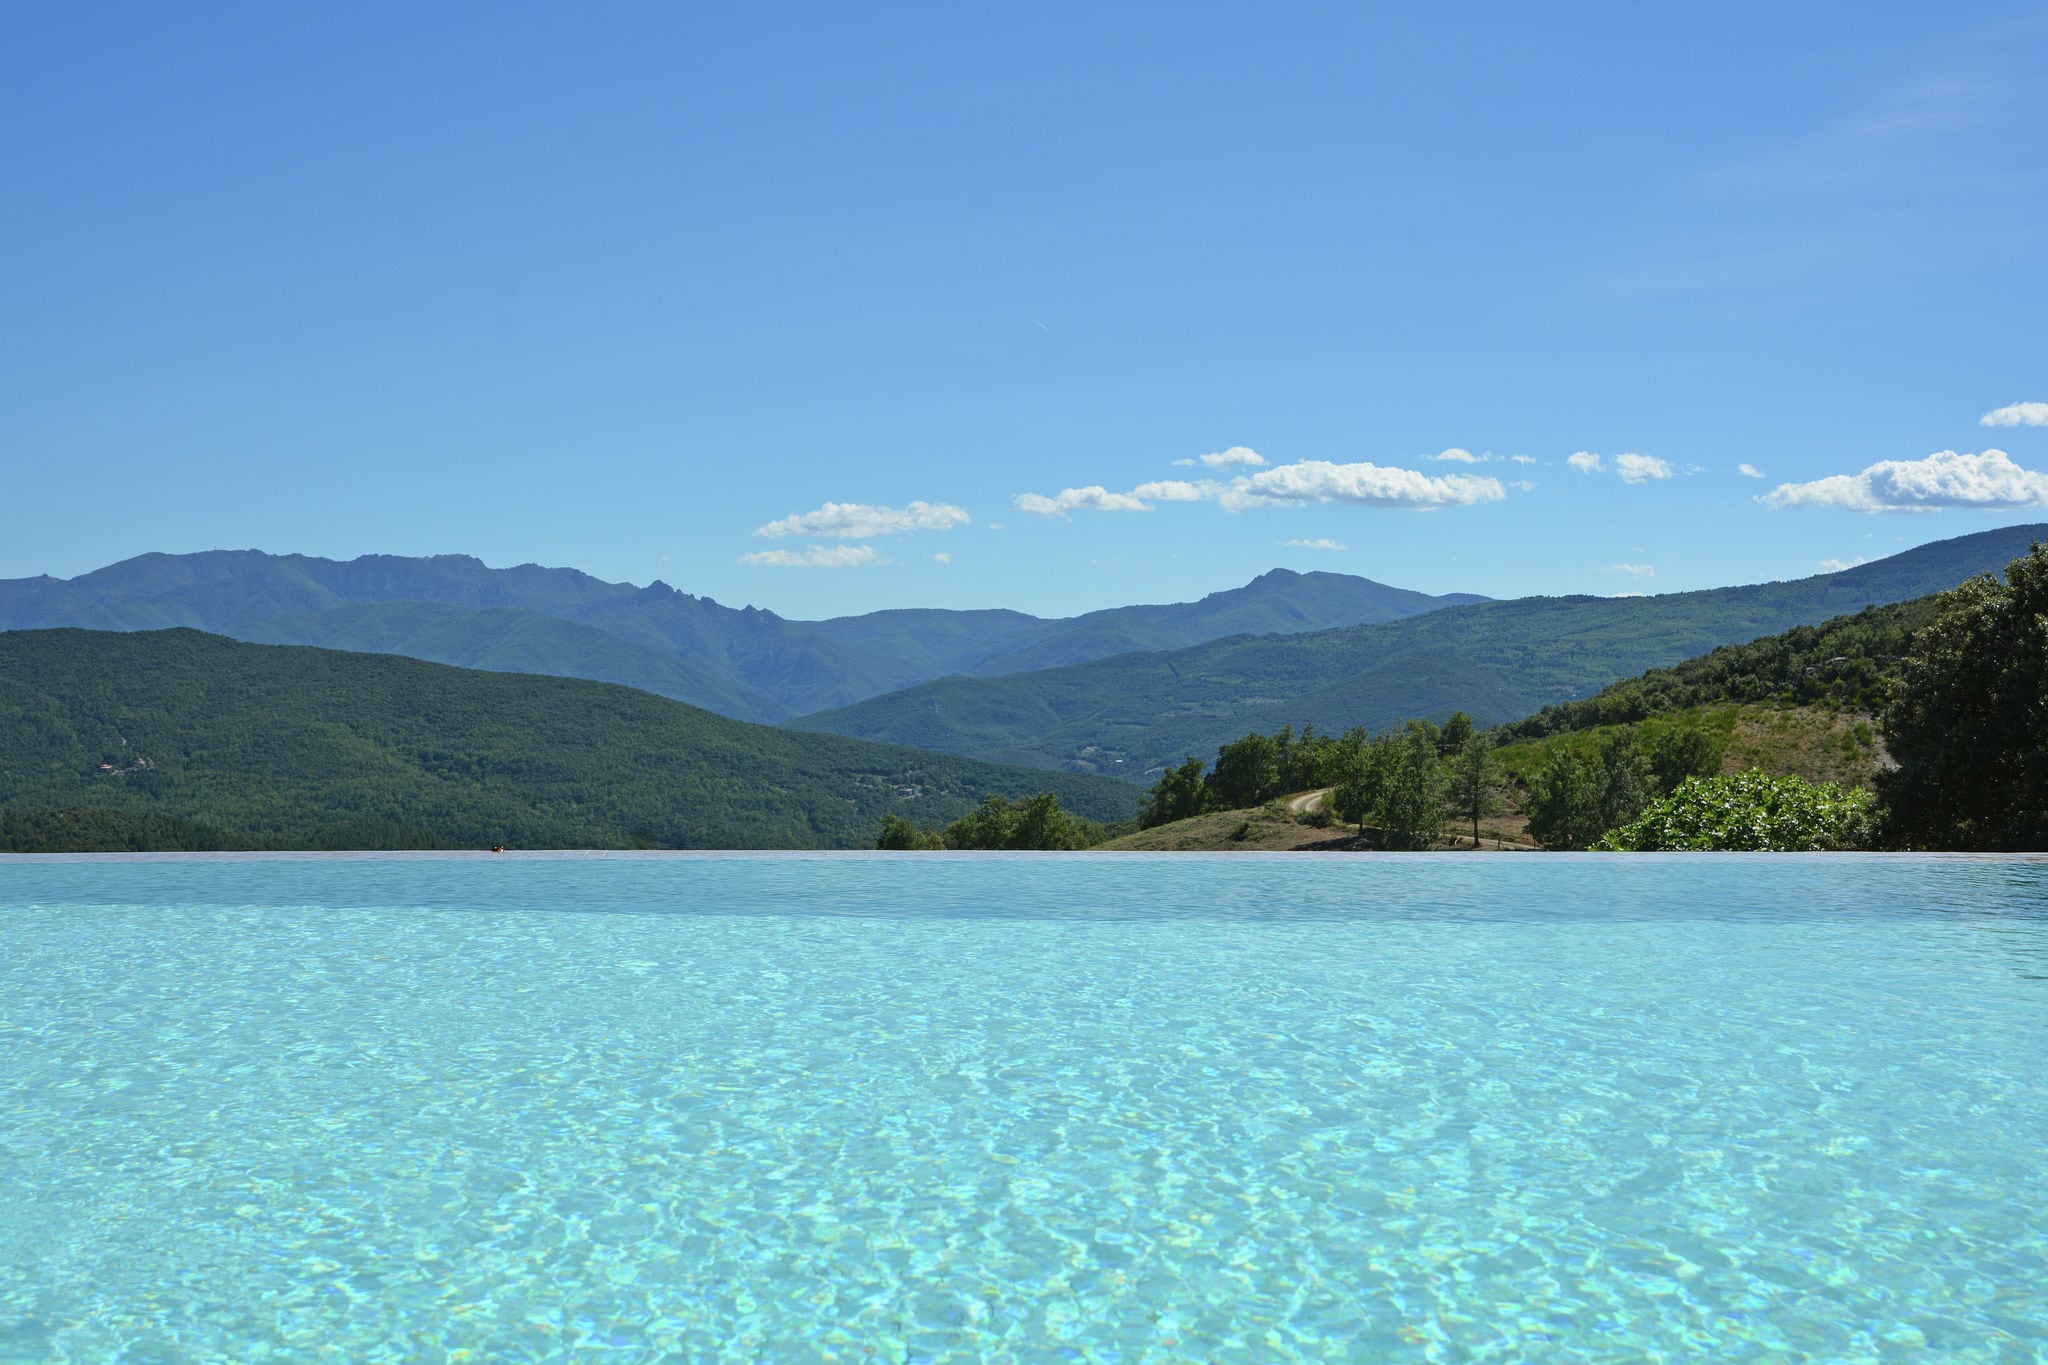 Comfortabel vakantiehuis in Zuid-Frankrijk met gedeeld zwembad